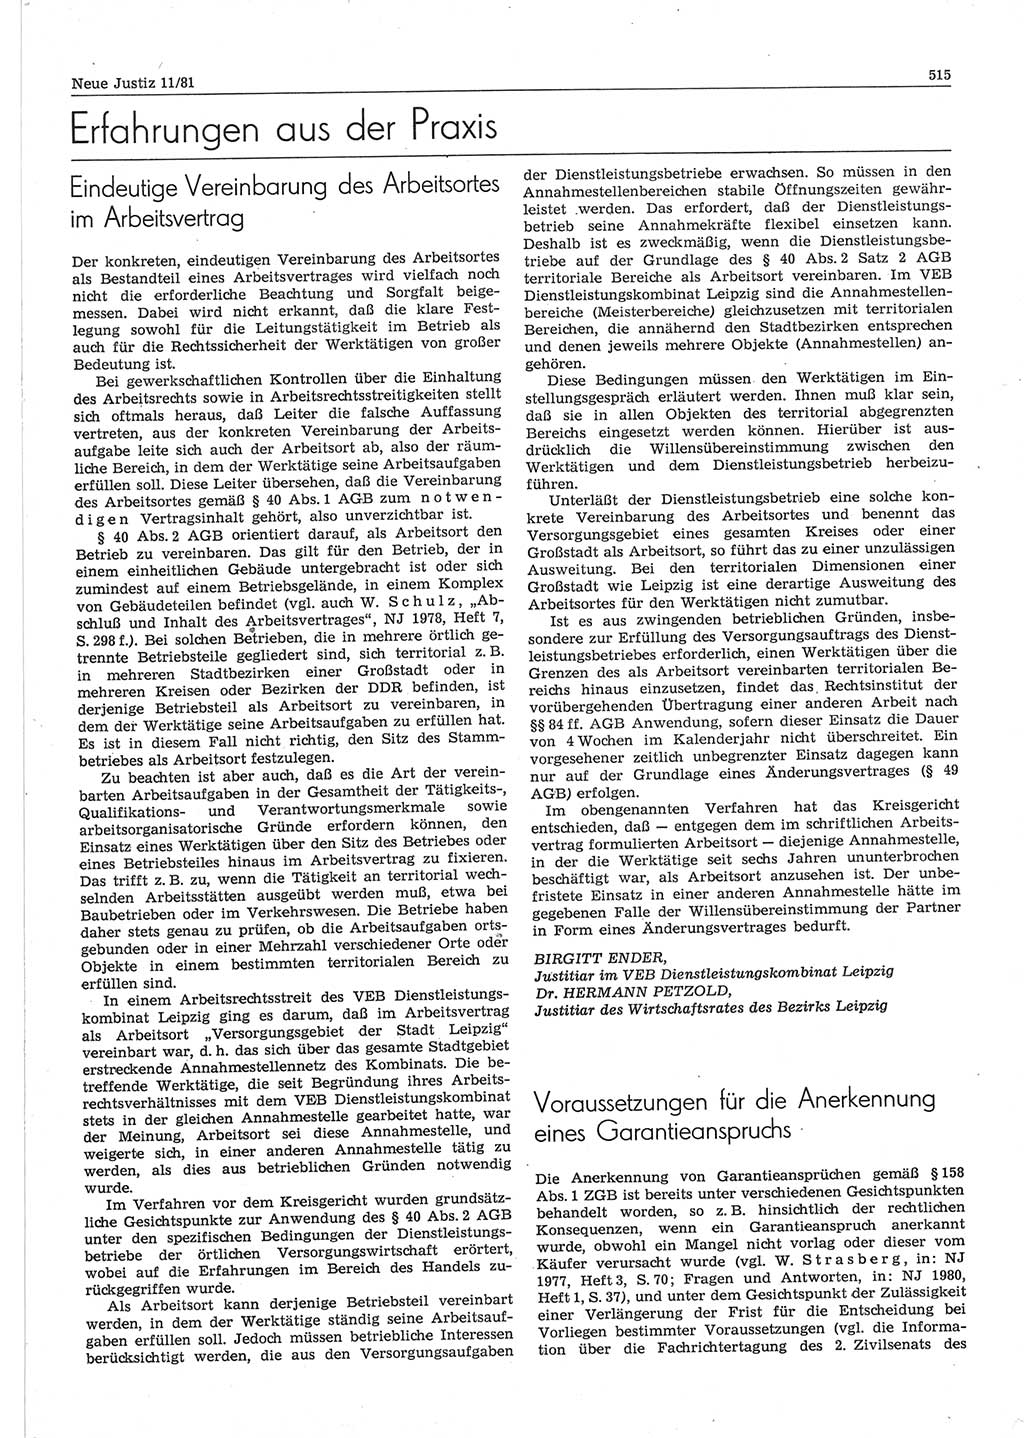 Neue Justiz (NJ), Zeitschrift für sozialistisches Recht und Gesetzlichkeit [Deutsche Demokratische Republik (DDR)], 35. Jahrgang 1981, Seite 515 (NJ DDR 1981, S. 515)